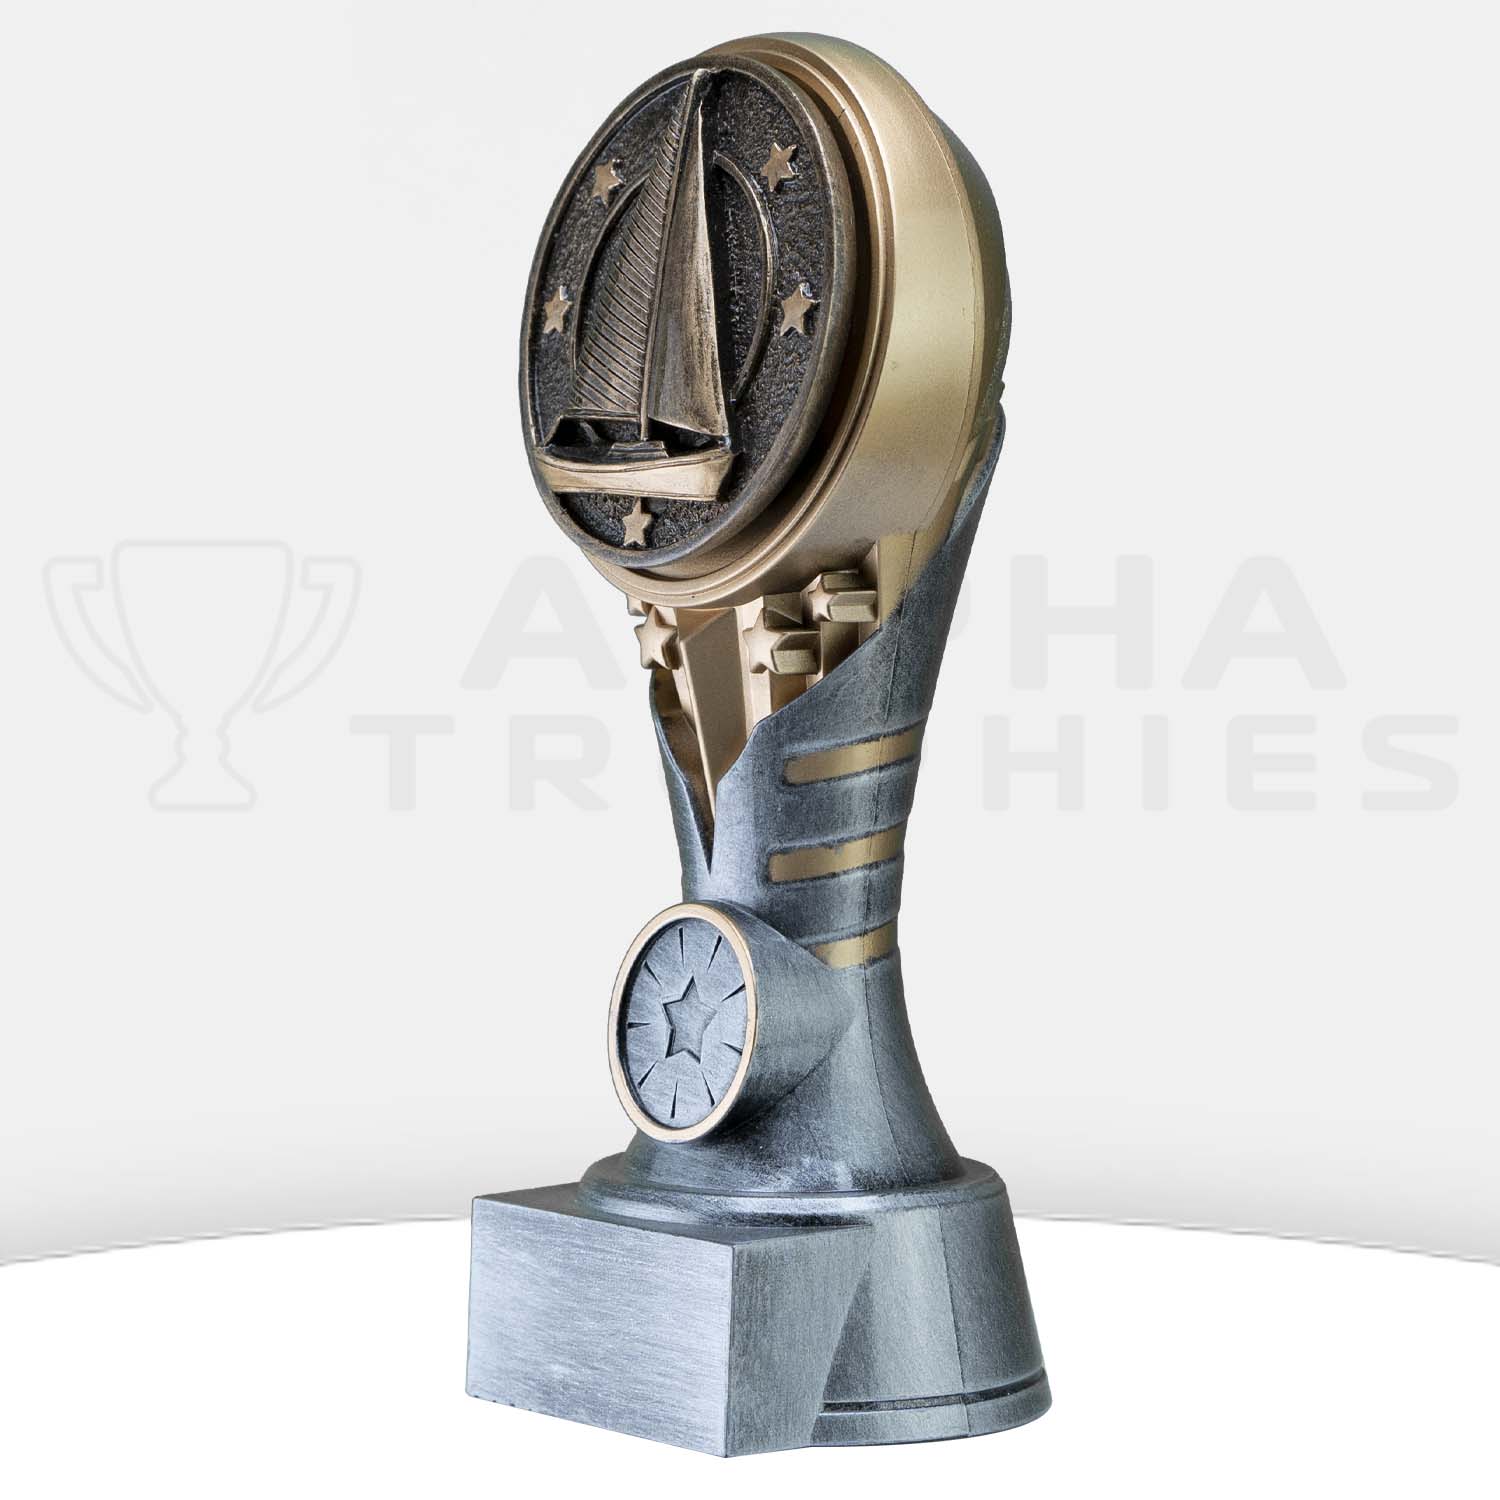 ikon-trophy-sailing-kn296a-side